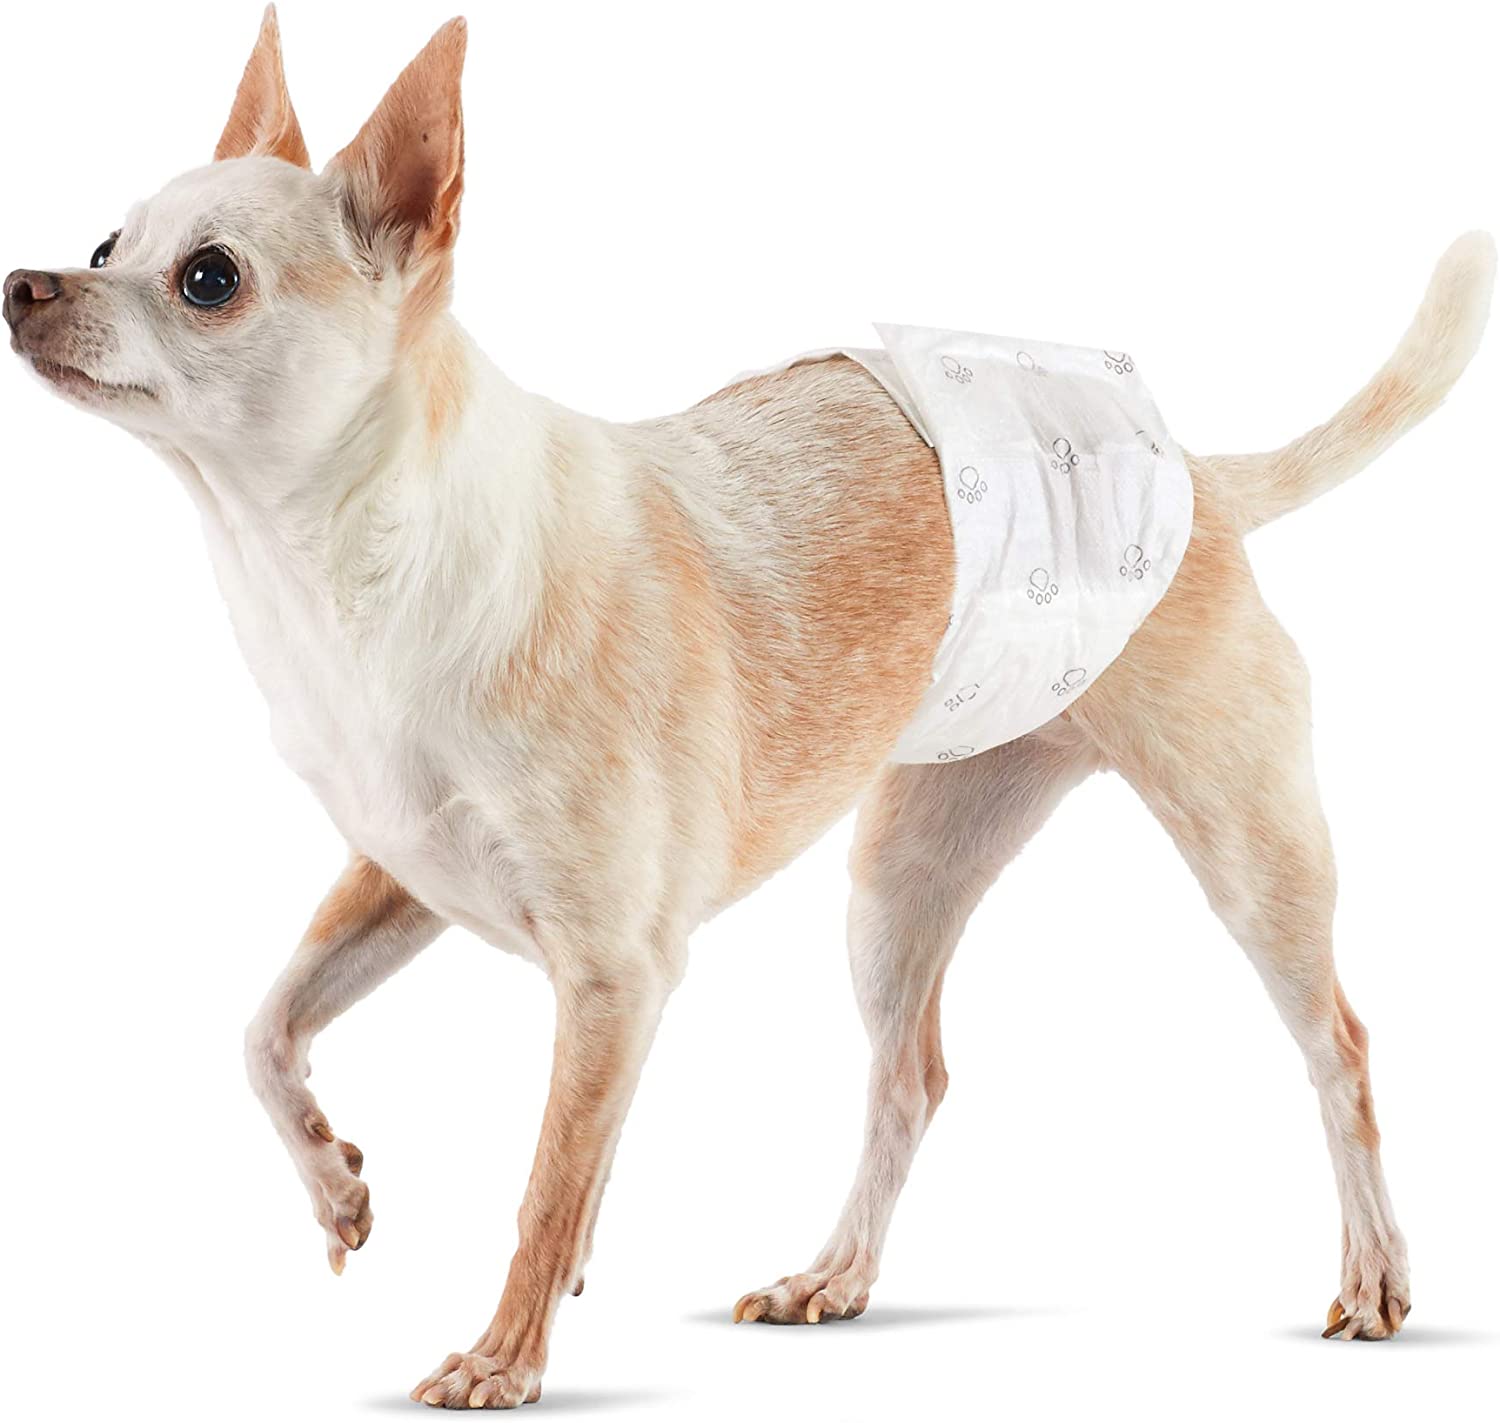 7. Amazon Basics Male Dog Wrap